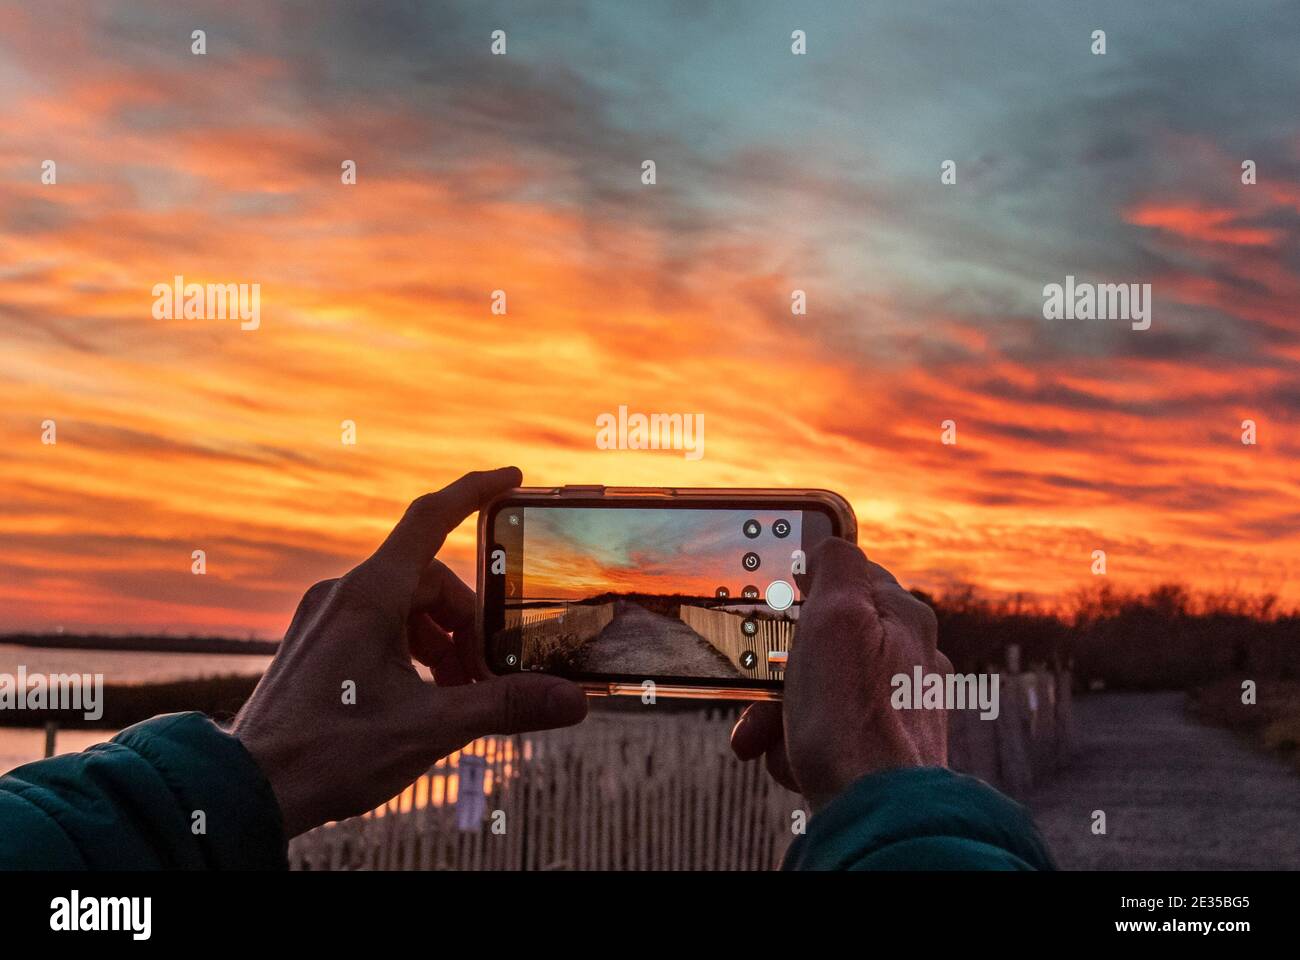 Capture d'un i-phone un coucher de soleil spectaculaire avec un i-phone Banque D'Images